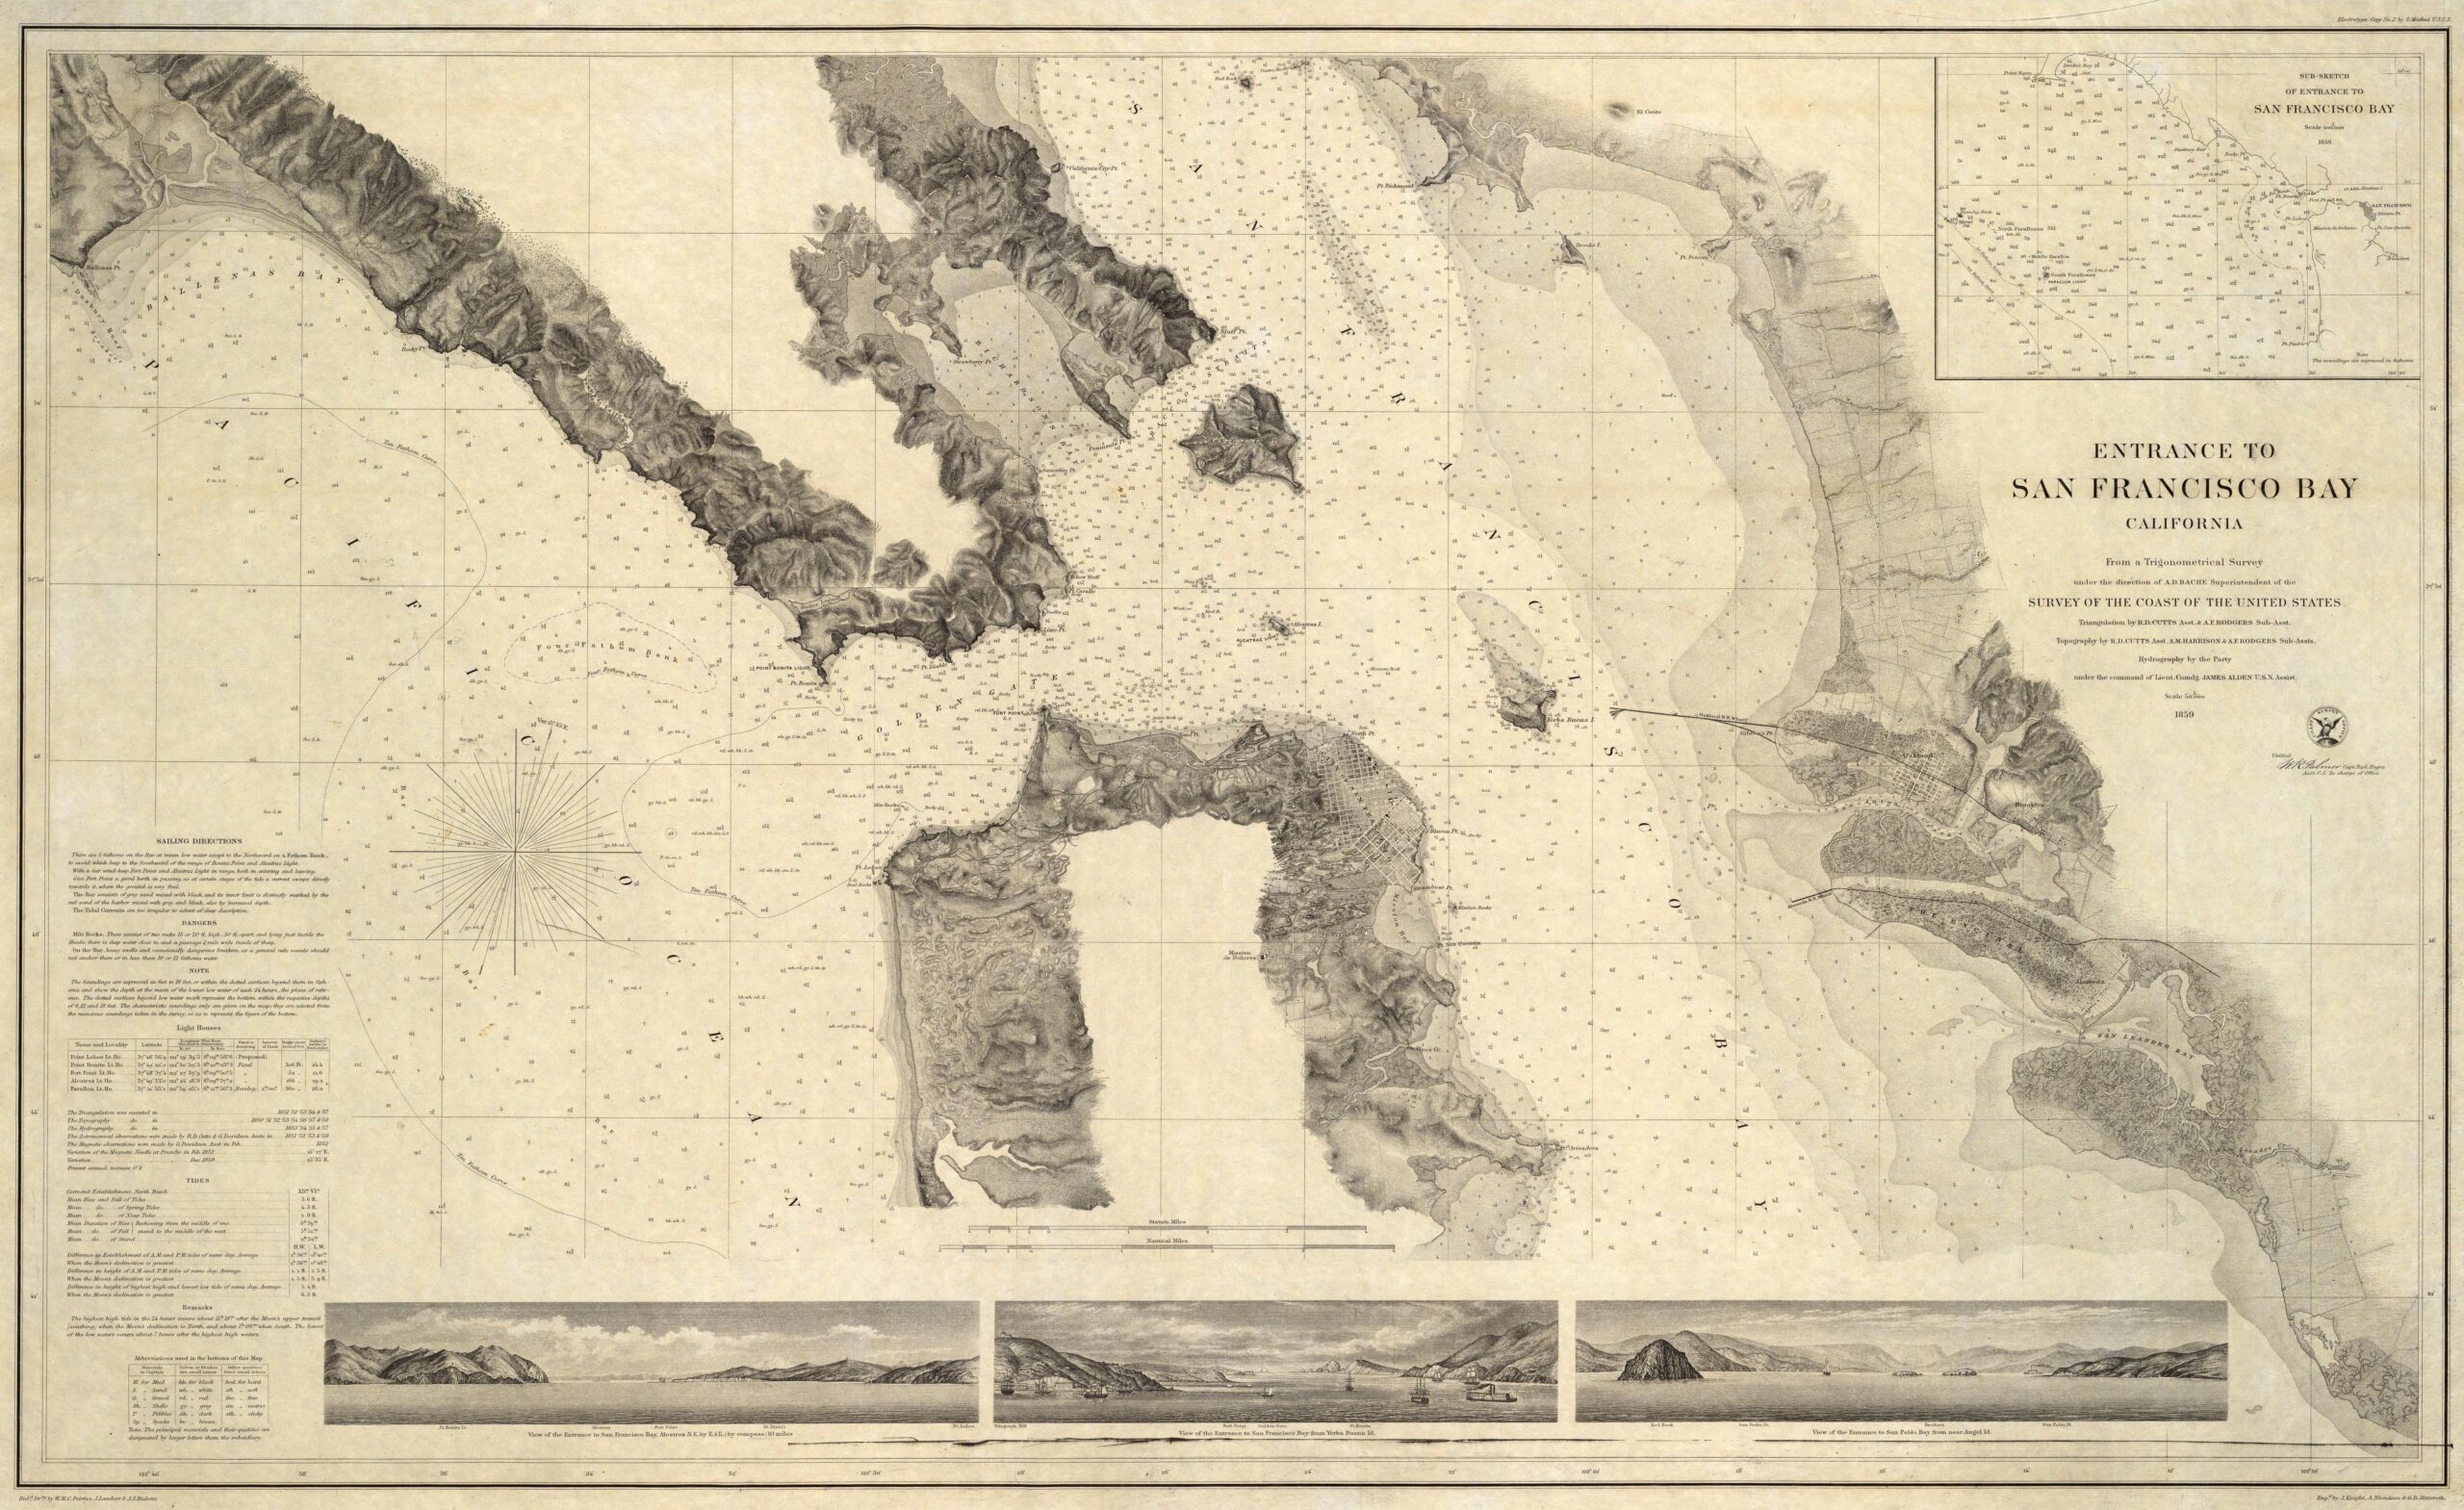 Entrada a la bahía de San Francisco (1859)